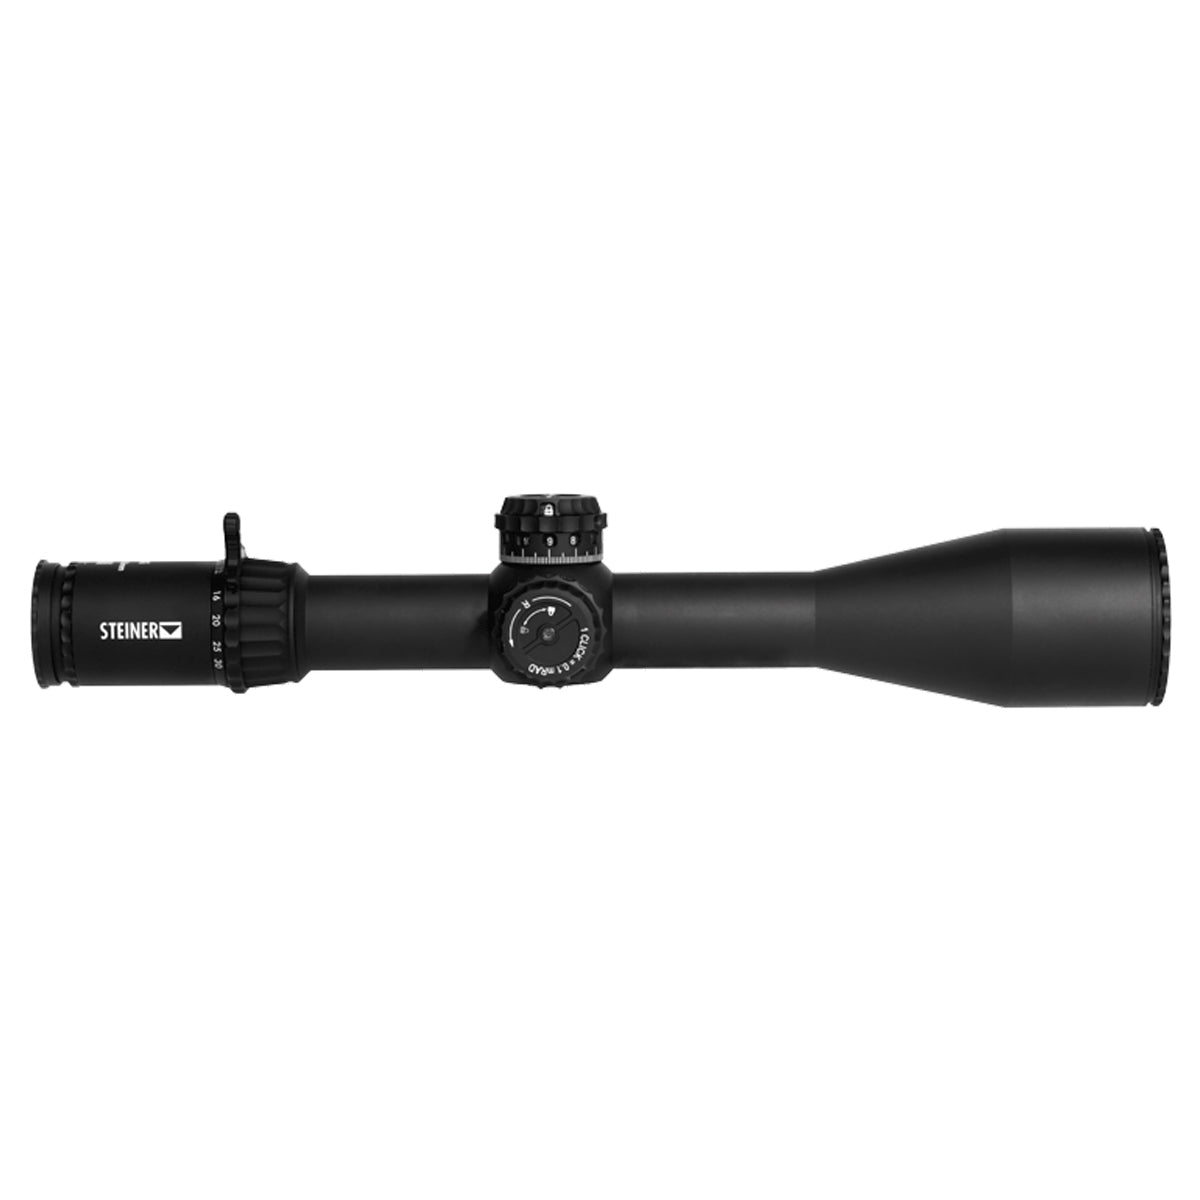 Steiner Optics T6Xi 5-30x56mm SCR2 Riflescope